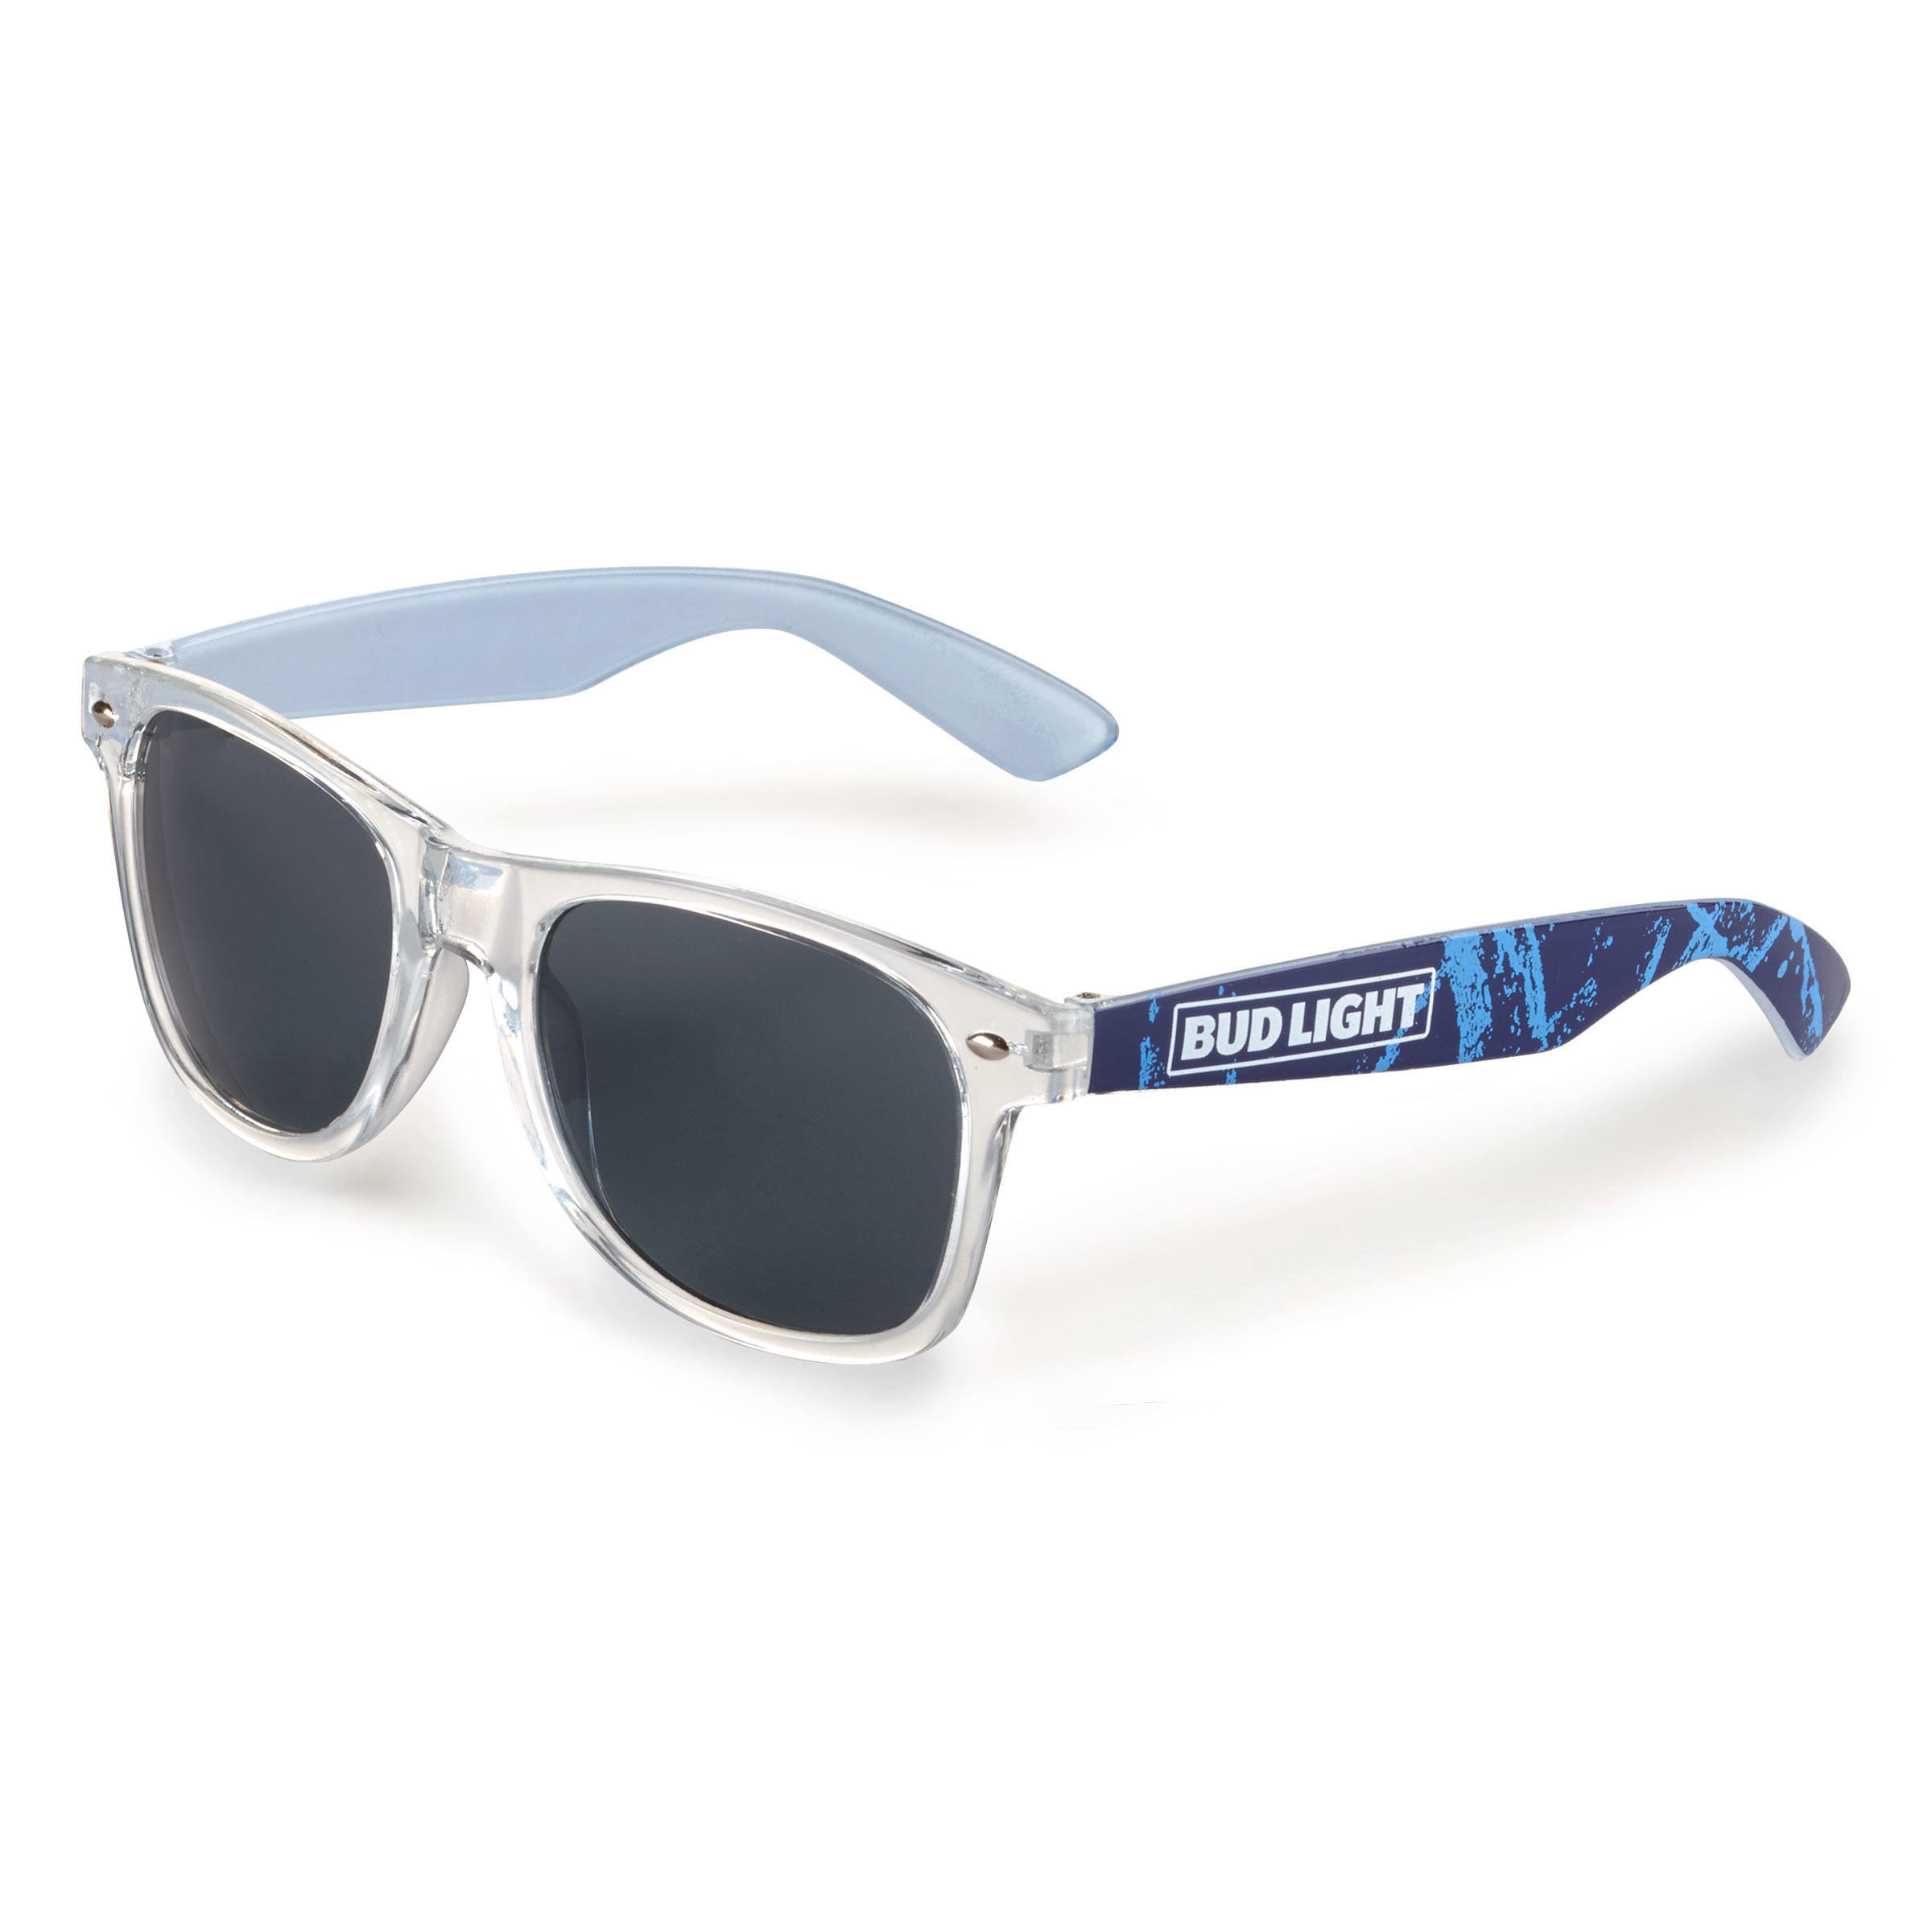 Bud Light Black Lens Sunglasses